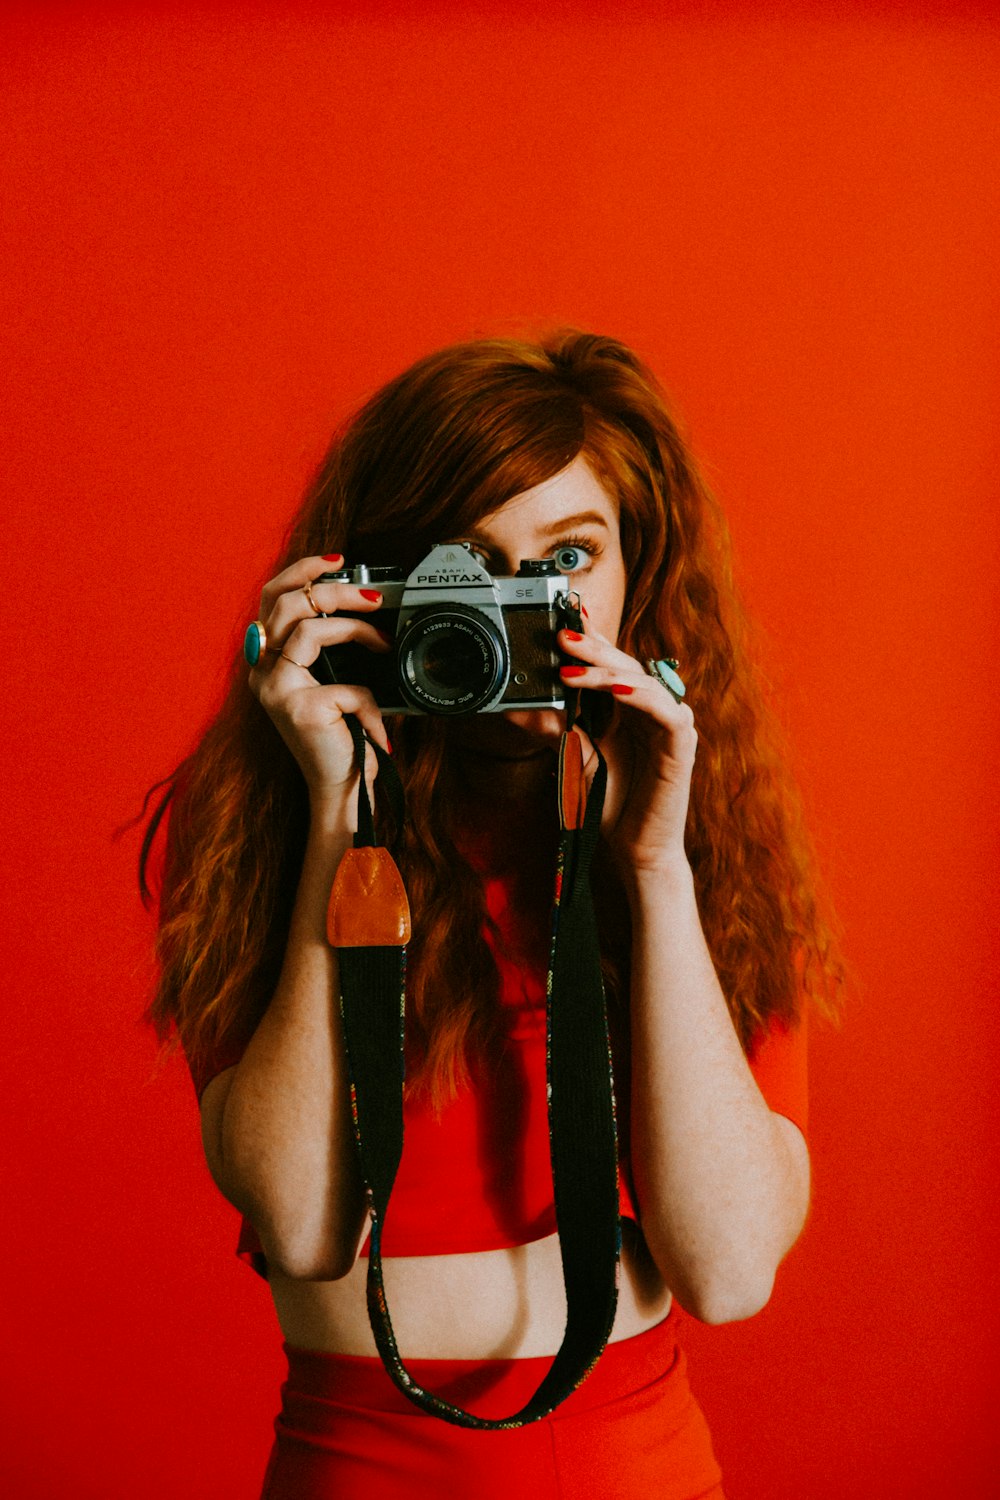 ペンタックスのカメラを保持している赤いトップスとボトムスの女性